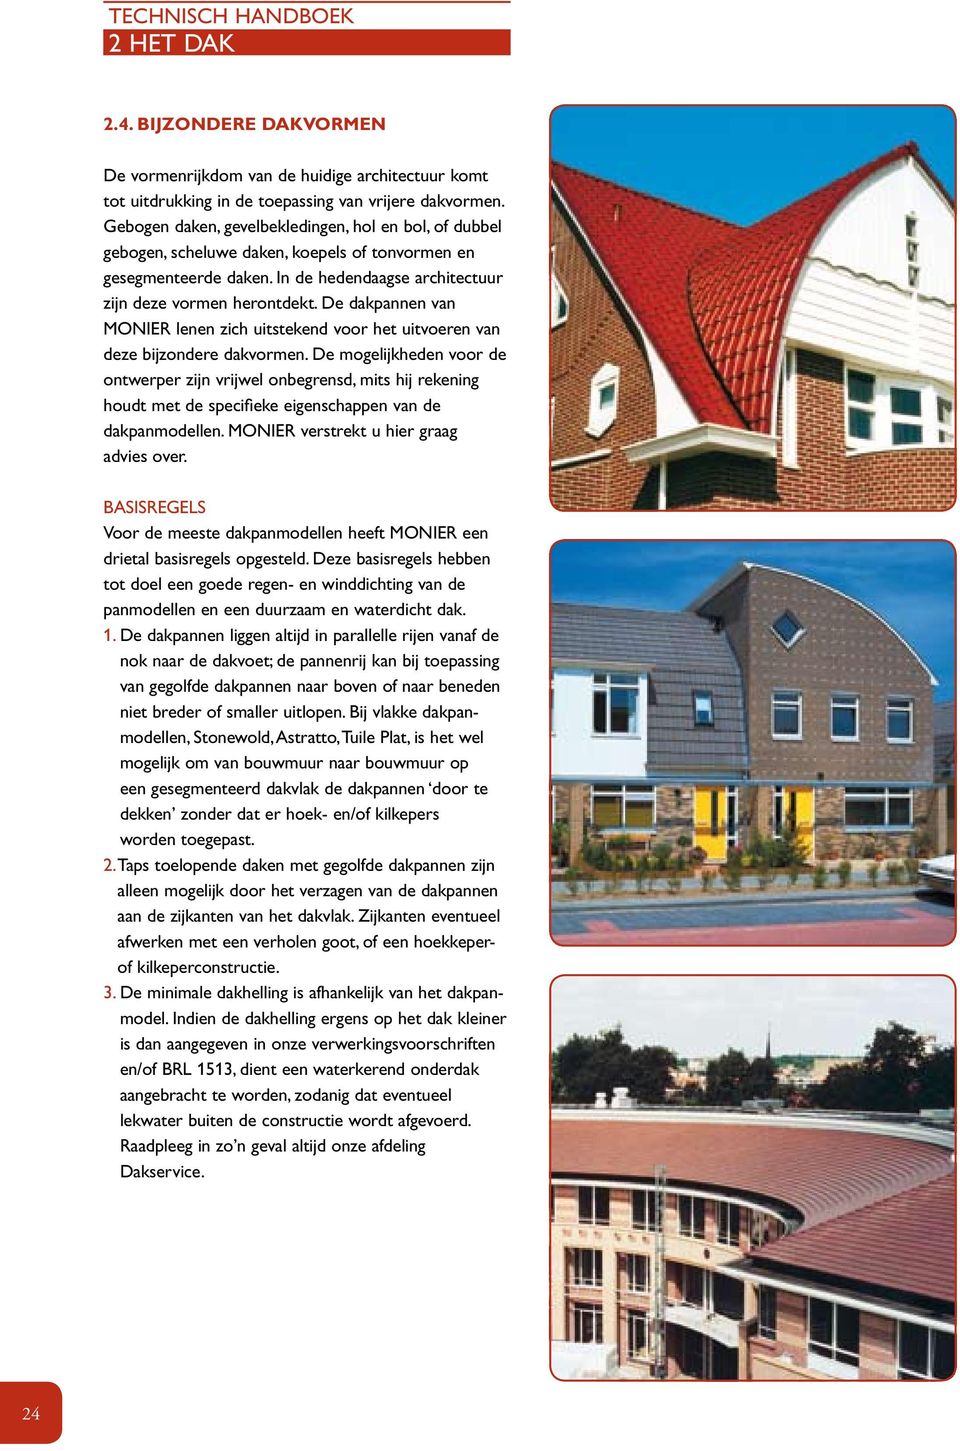 De dakpannen van MONIER lenen zich uitstekend voor het uitvoeren van deze bijzondere dakvormen.